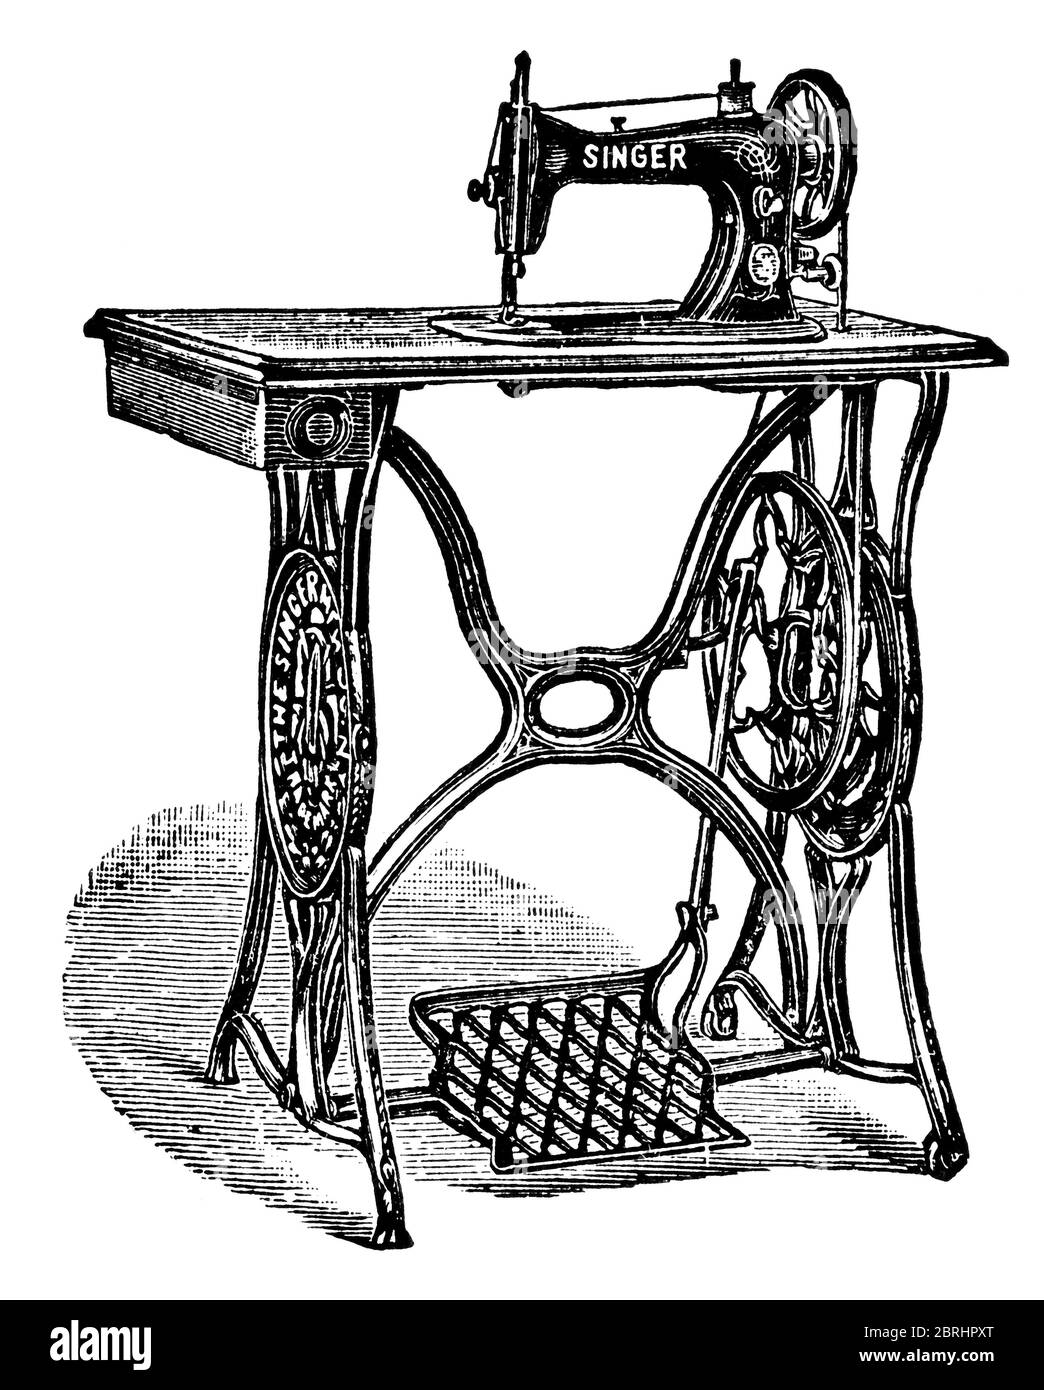 Nuevo modelo familiar de máquina de coser Singer. Ilustración del siglo 19.  Fondo blanco Fotografía de stock - Alamy